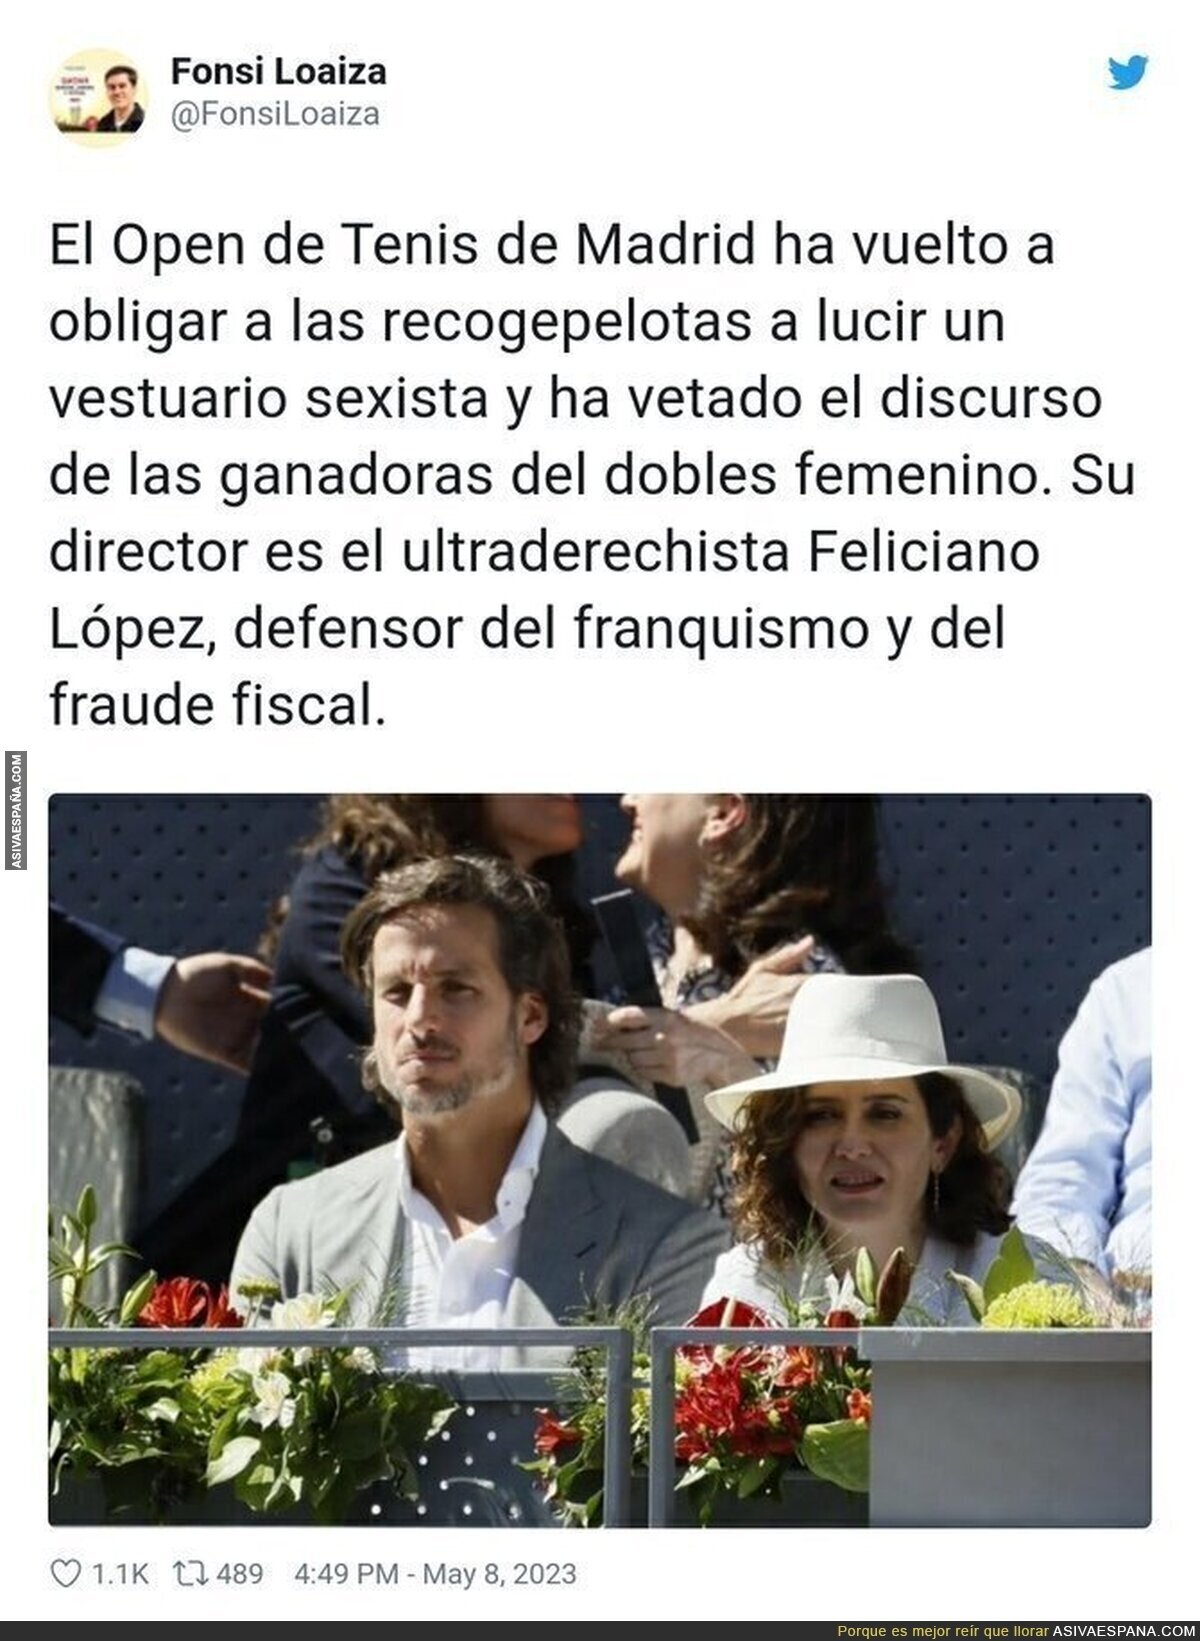 El camino que toma el Open de Tenis de Madrid con Feliciano López